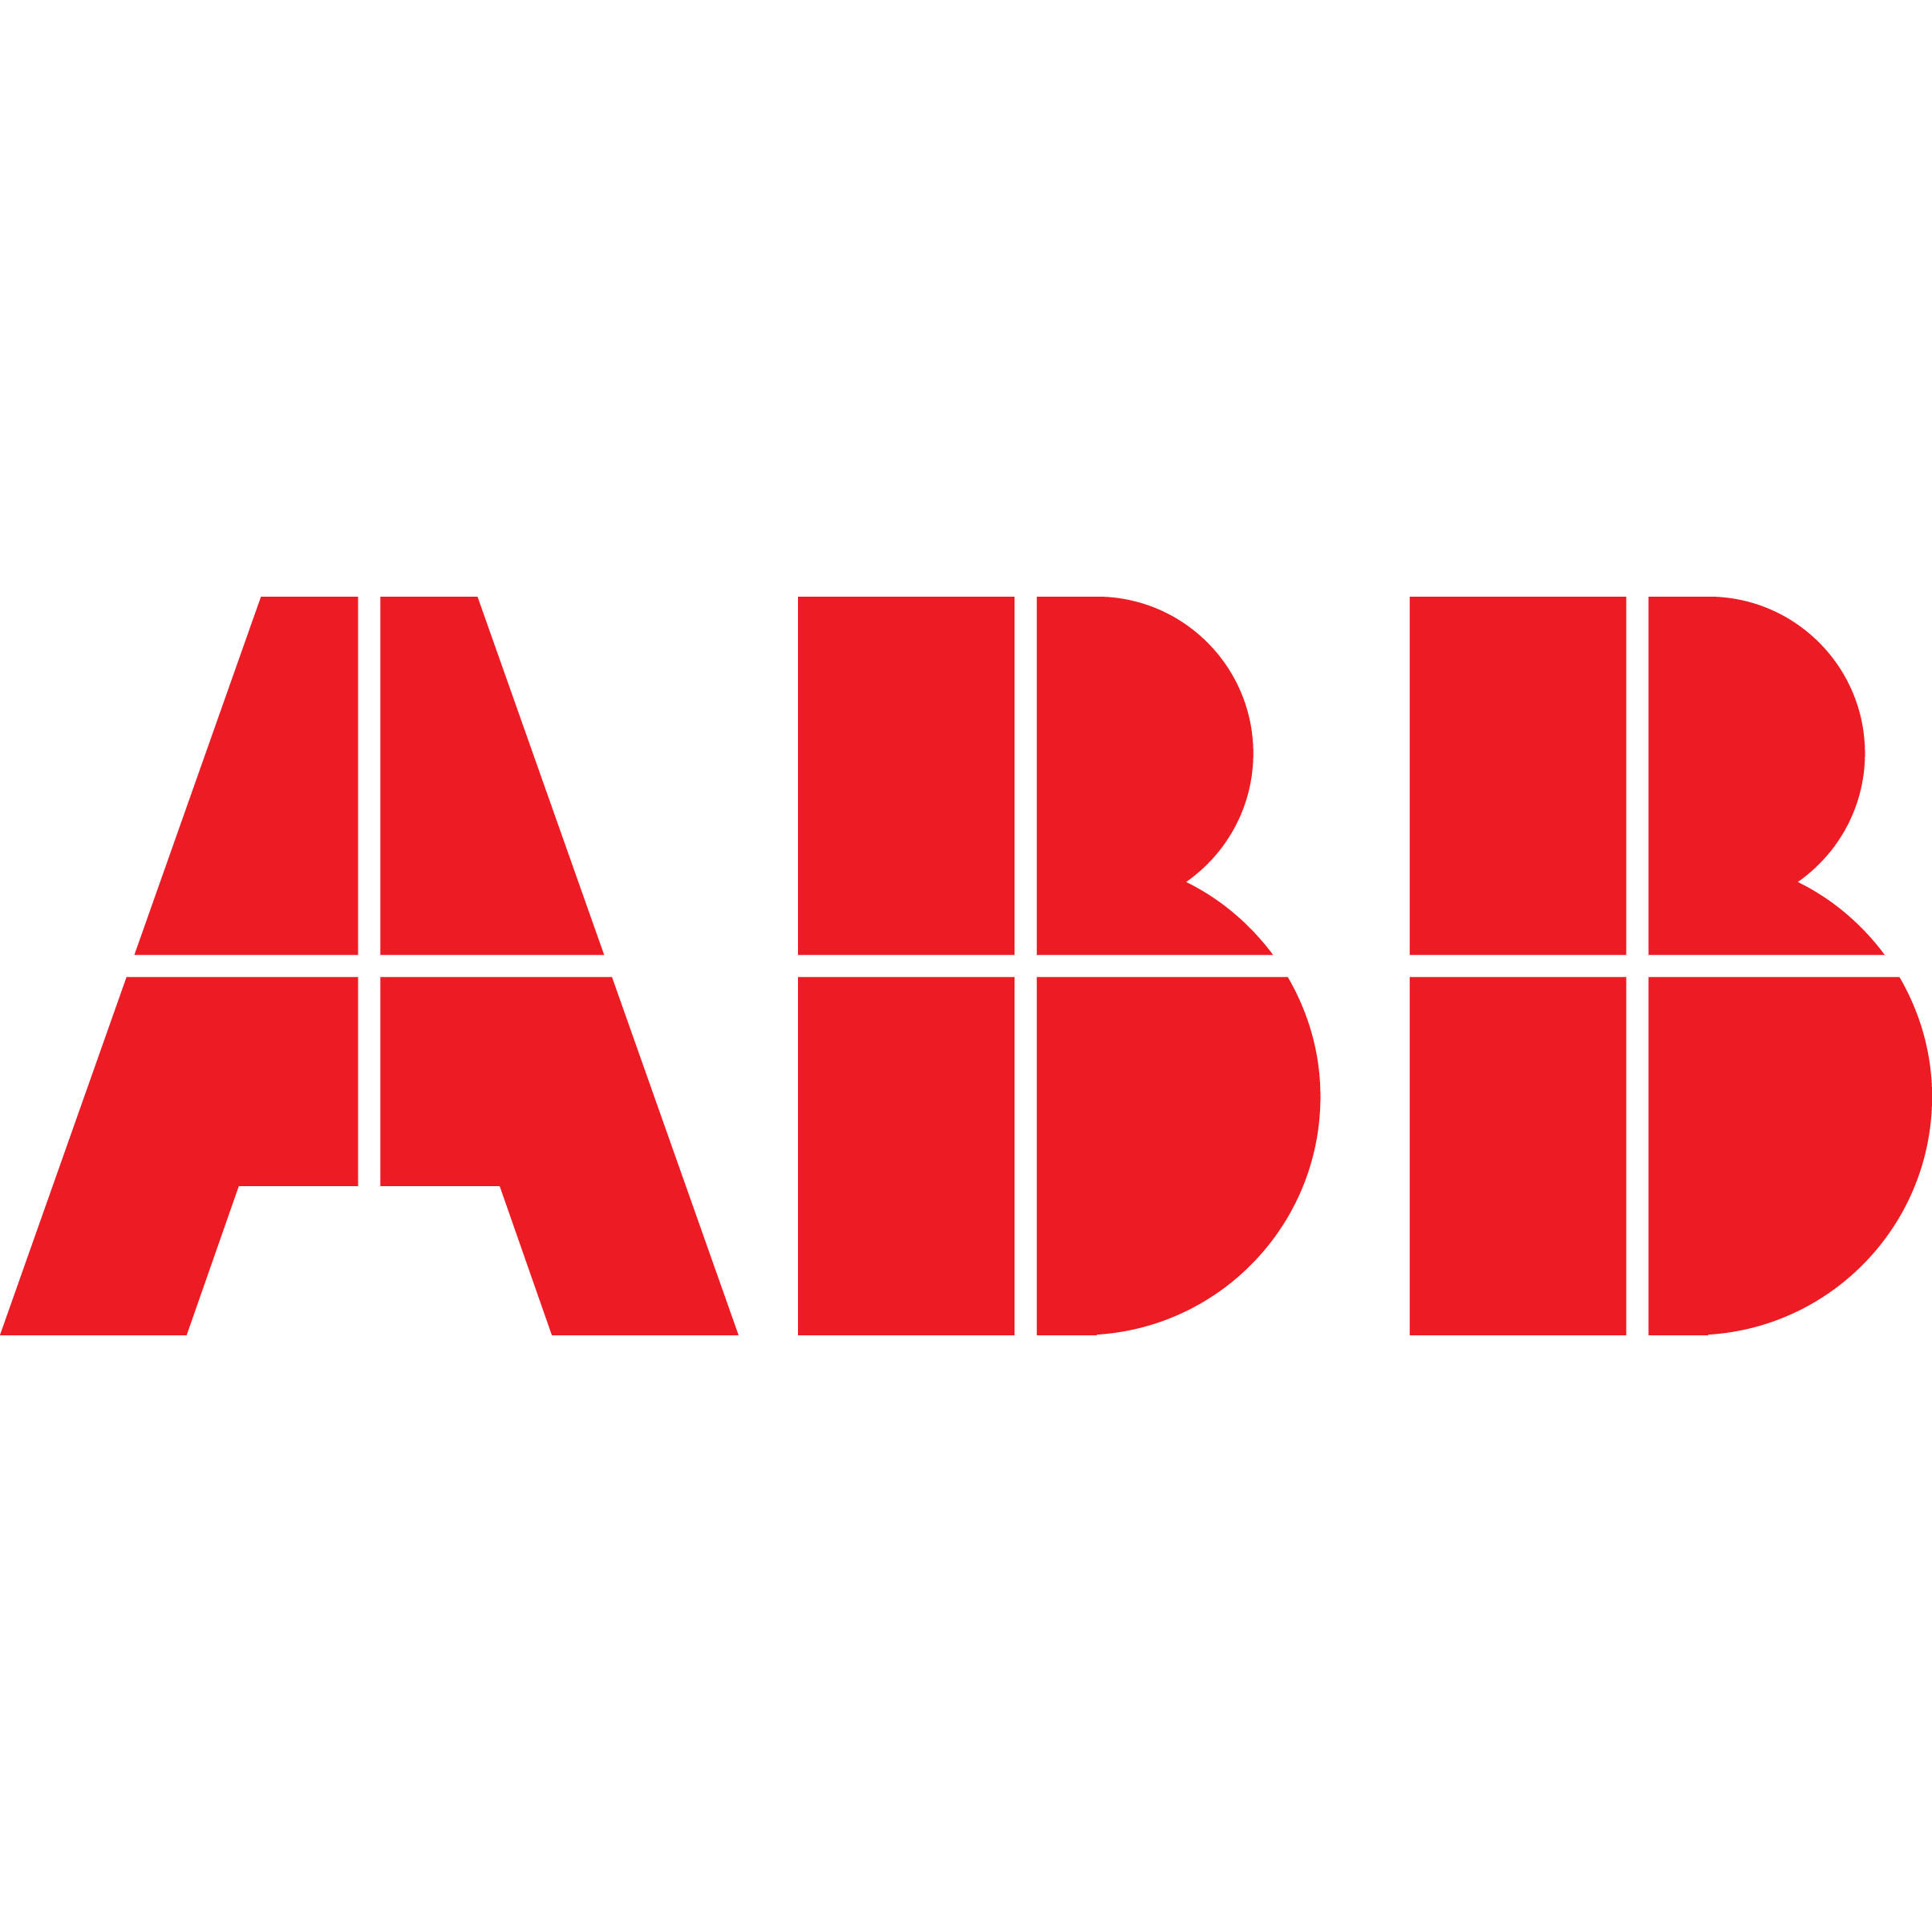 Логотип ABB